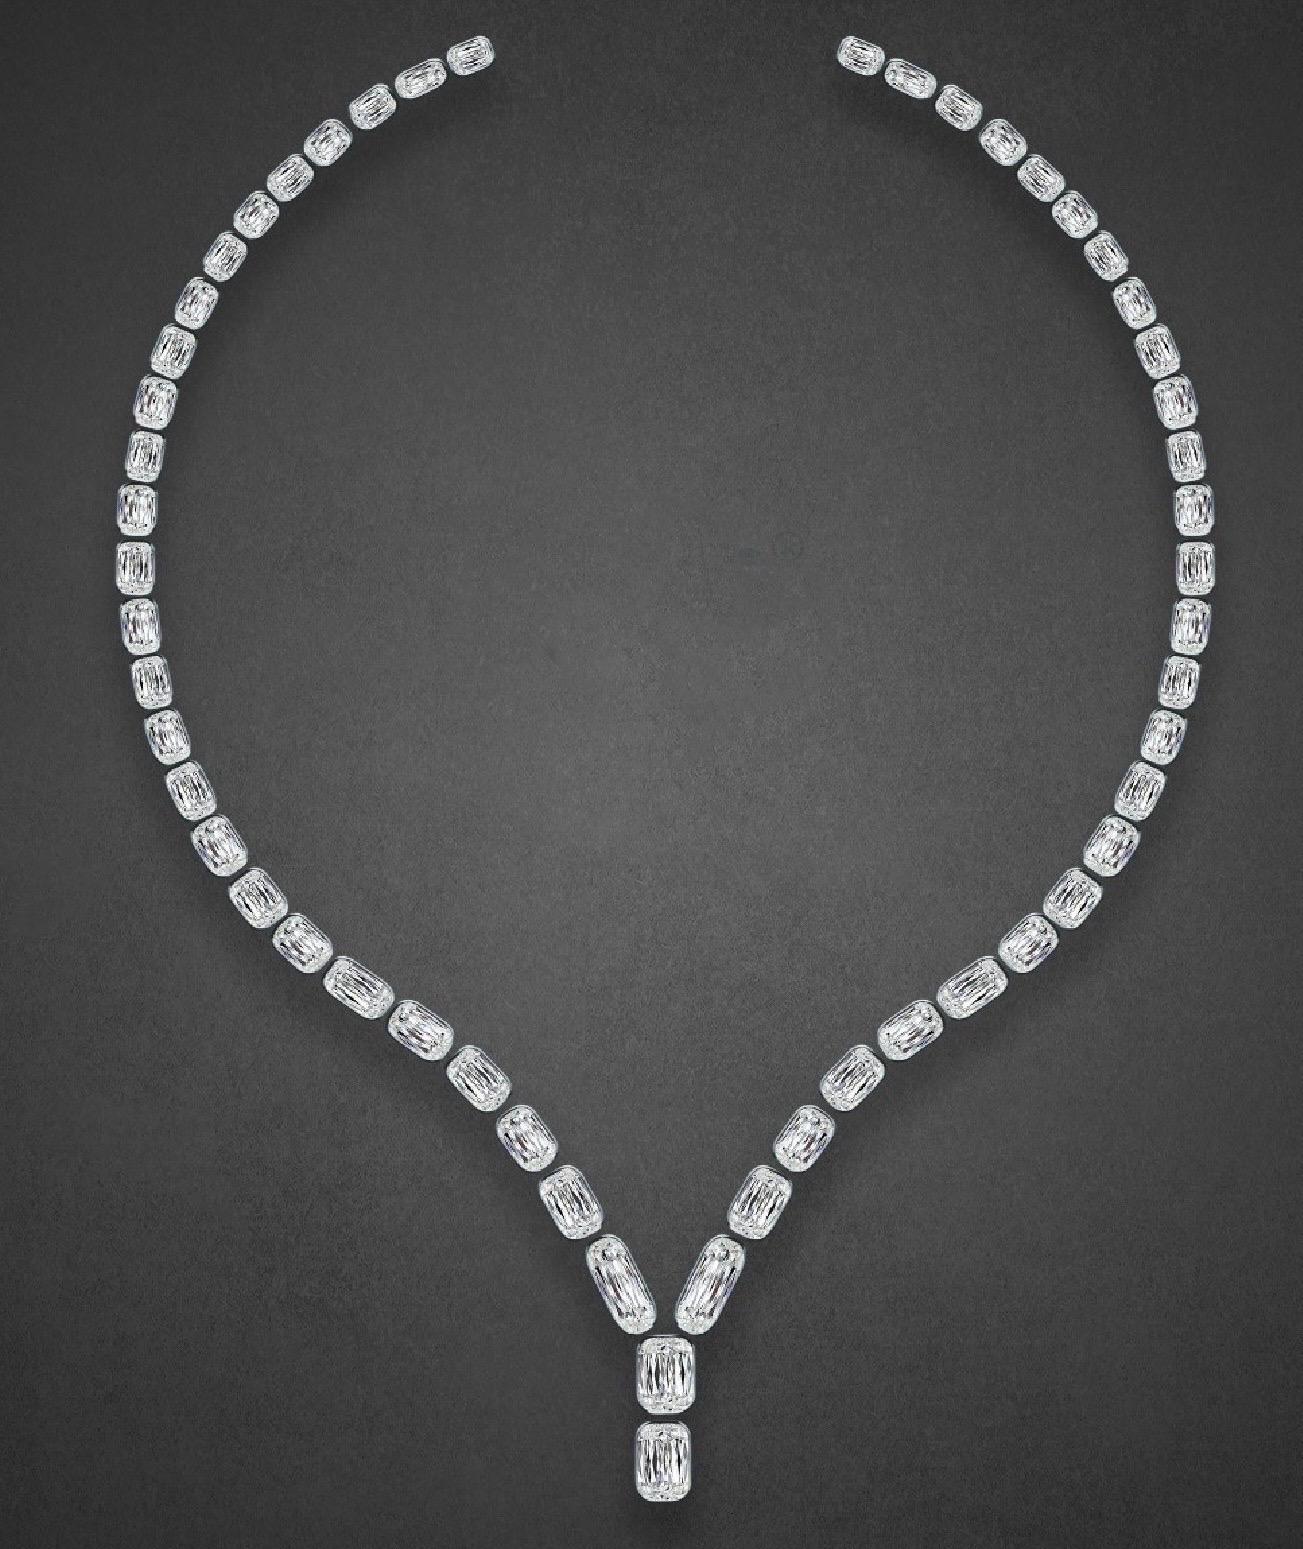 Von Emilio Jewelry New York, einem renommierten Händler in der berühmten New Yorker 5th Avenue,

Mit einer spektakulären Kollektion natürlicher GIA-zertifizierter Diamanten (jeder Diamant hat einen GIA-Bericht). Es handelt sich dabei nicht um einen